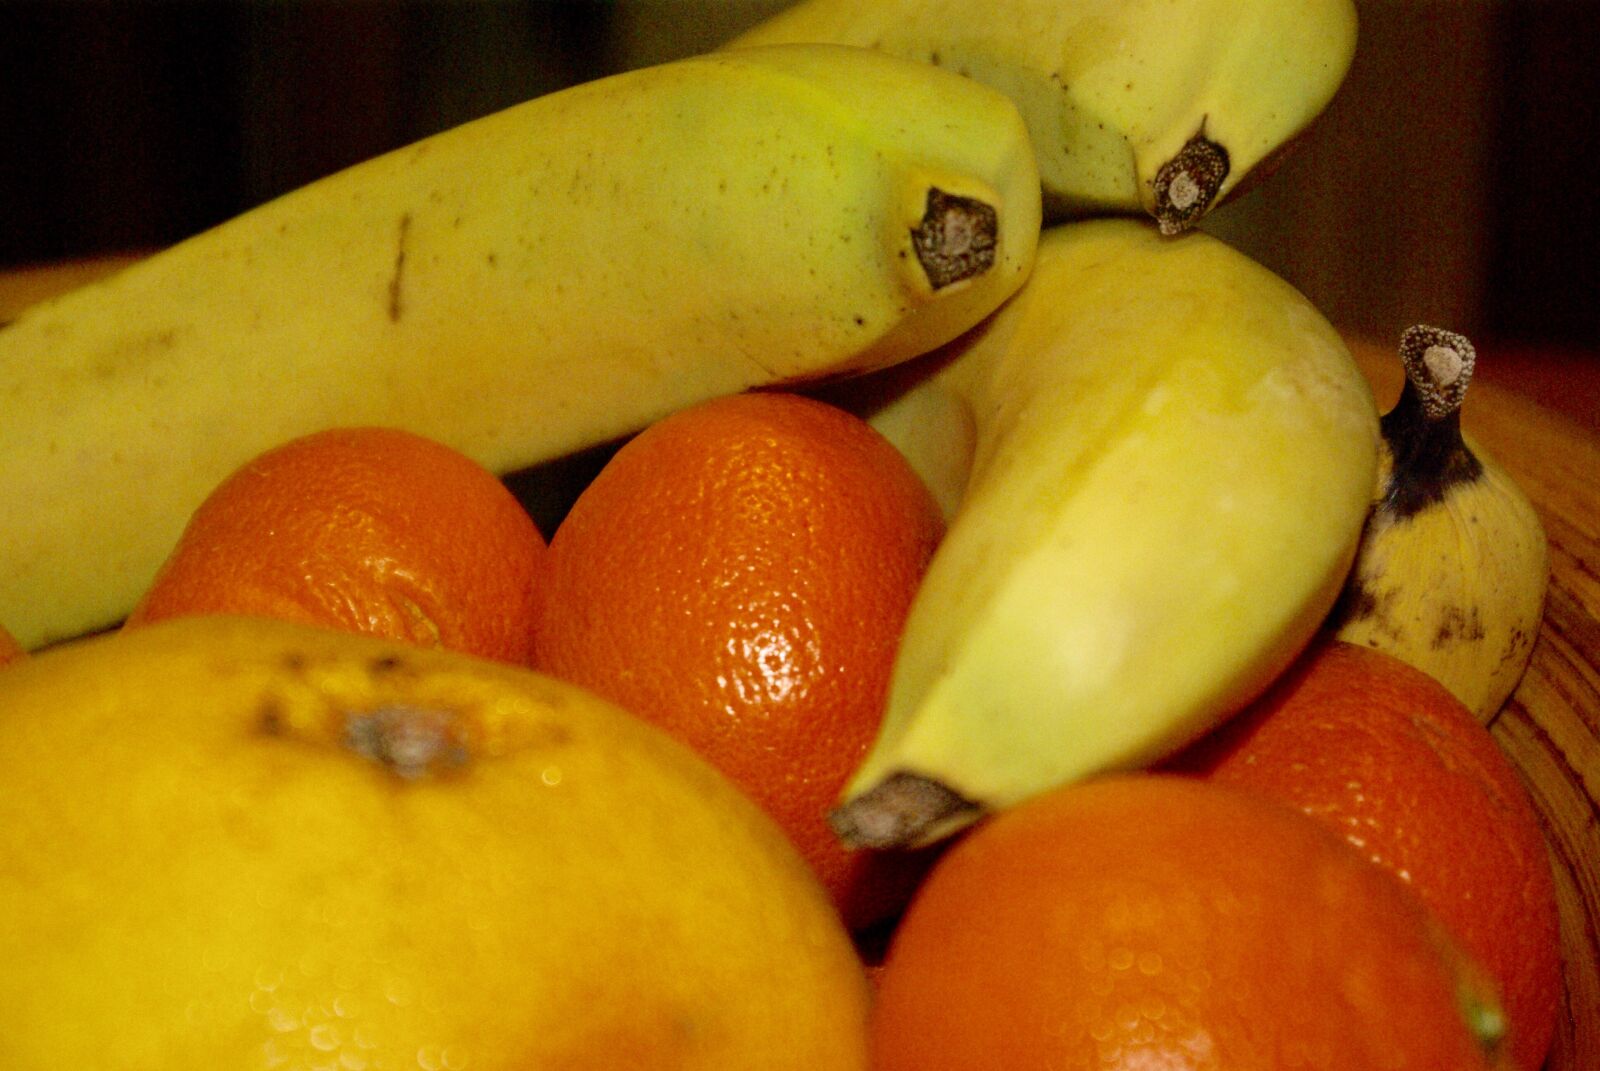 Pentax K10D sample photo. Fruit, food, grow photography